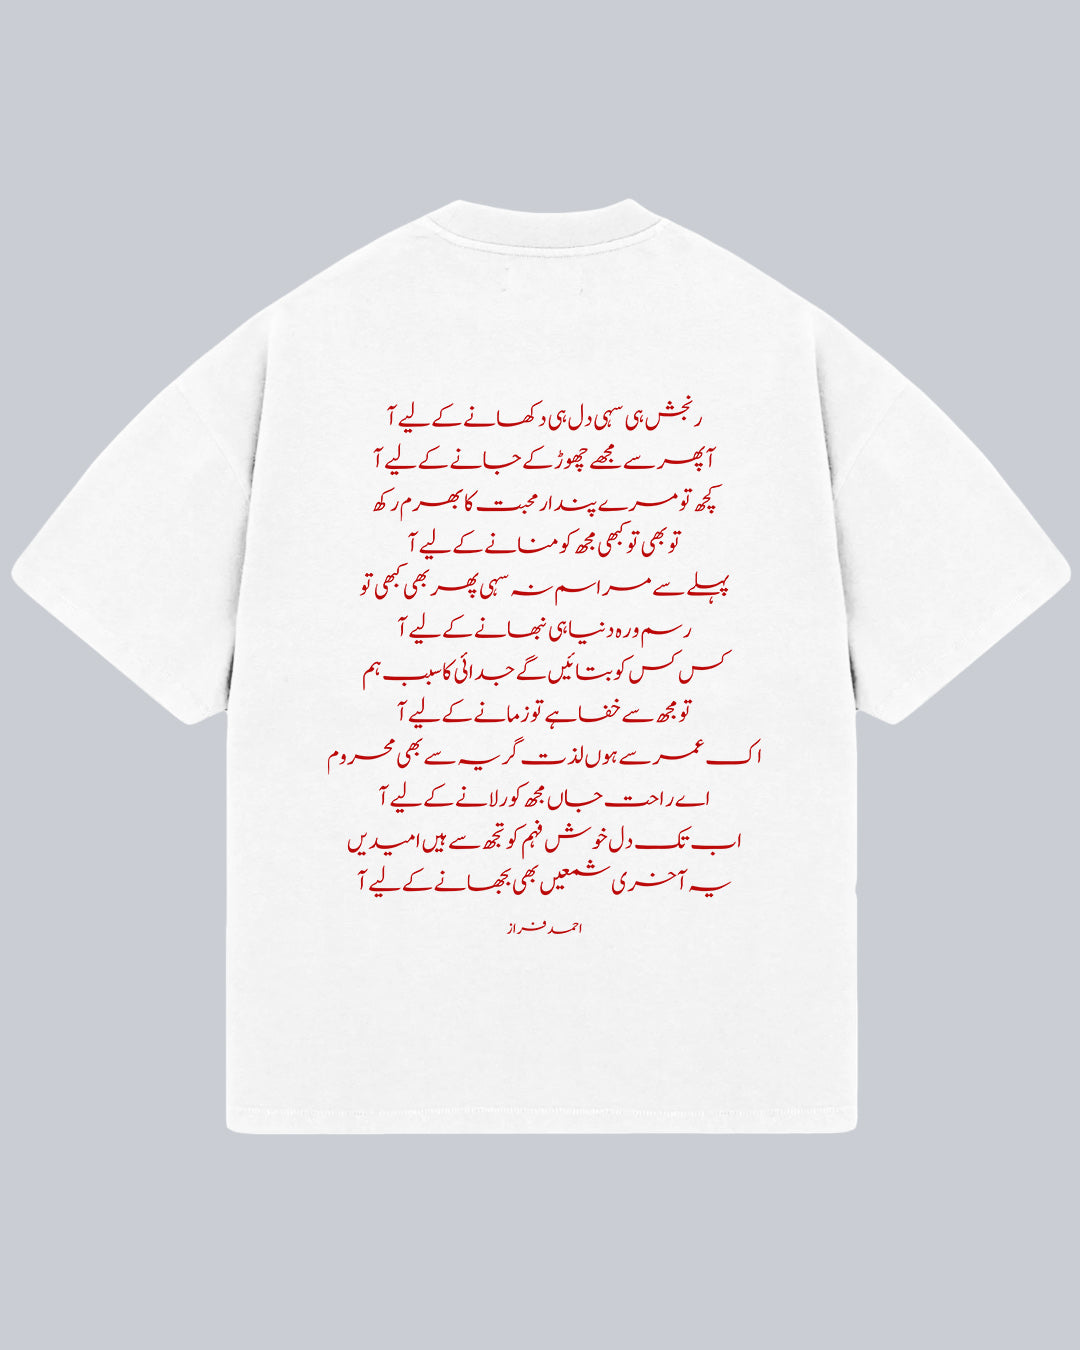 Ranjish Hi Sahi - Ahmad Faraz Oversized Tshirt, Oversized Tshirt, T-shirt available in Maroon, Black & White. Urdu Tshirt, Poetry Tshirt, Shayari Tshirt, Rekhta Tshirt, Rekhta Store Merchandise. Drop Shoulder Fit